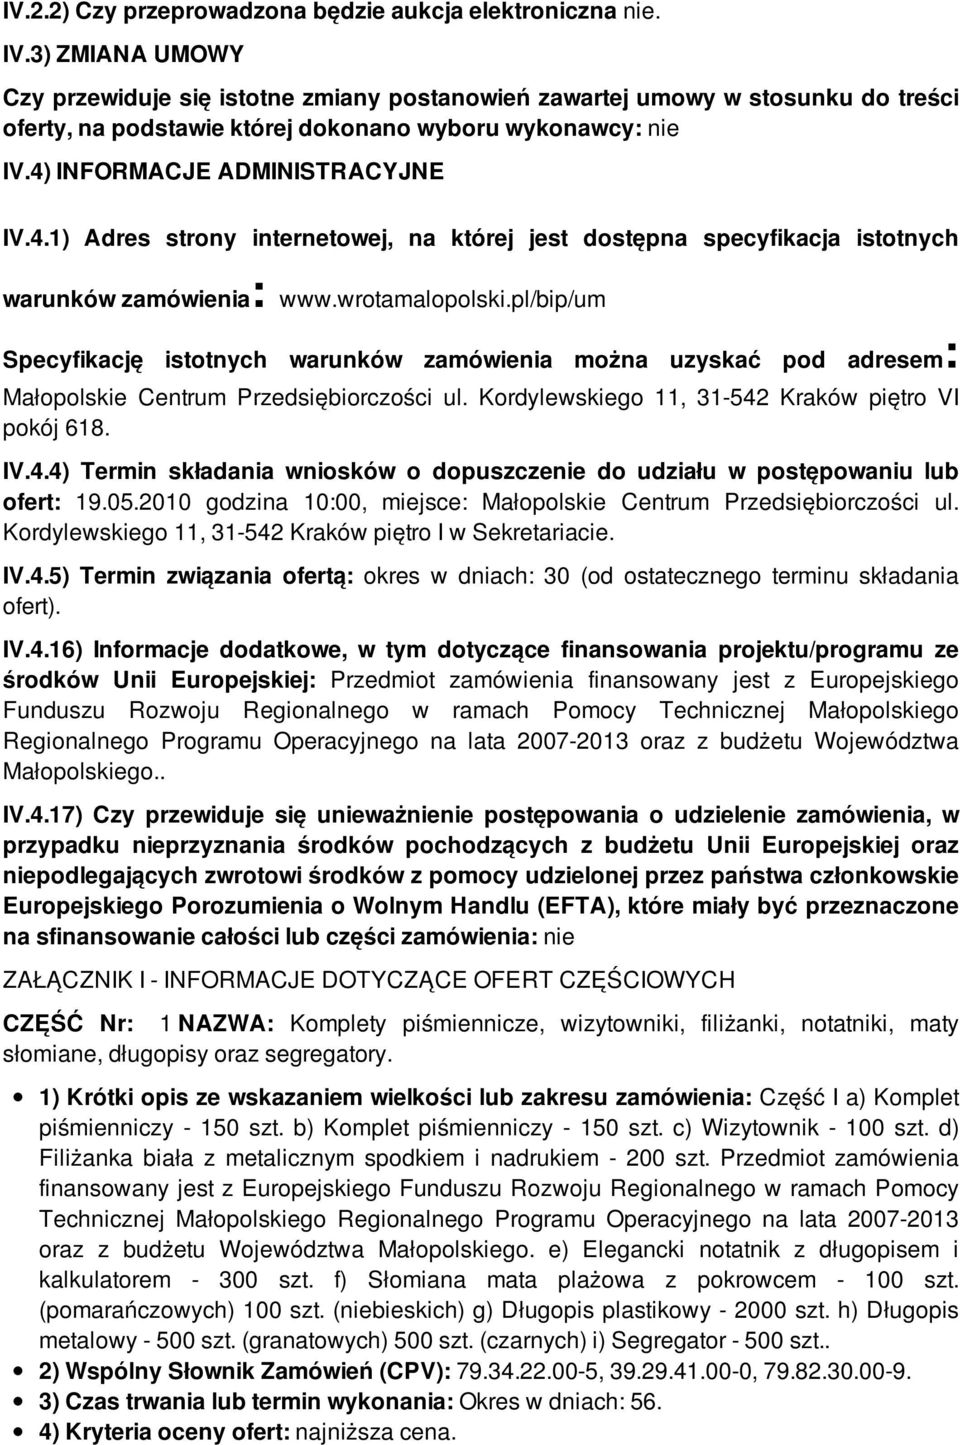 INFORMACJE ADMINISTRACYJNE IV.4.1) Adres strony internetowej, na której jest dostępna specyfikacja istotnych warunków zamówienia: www.wrotamalopolski.